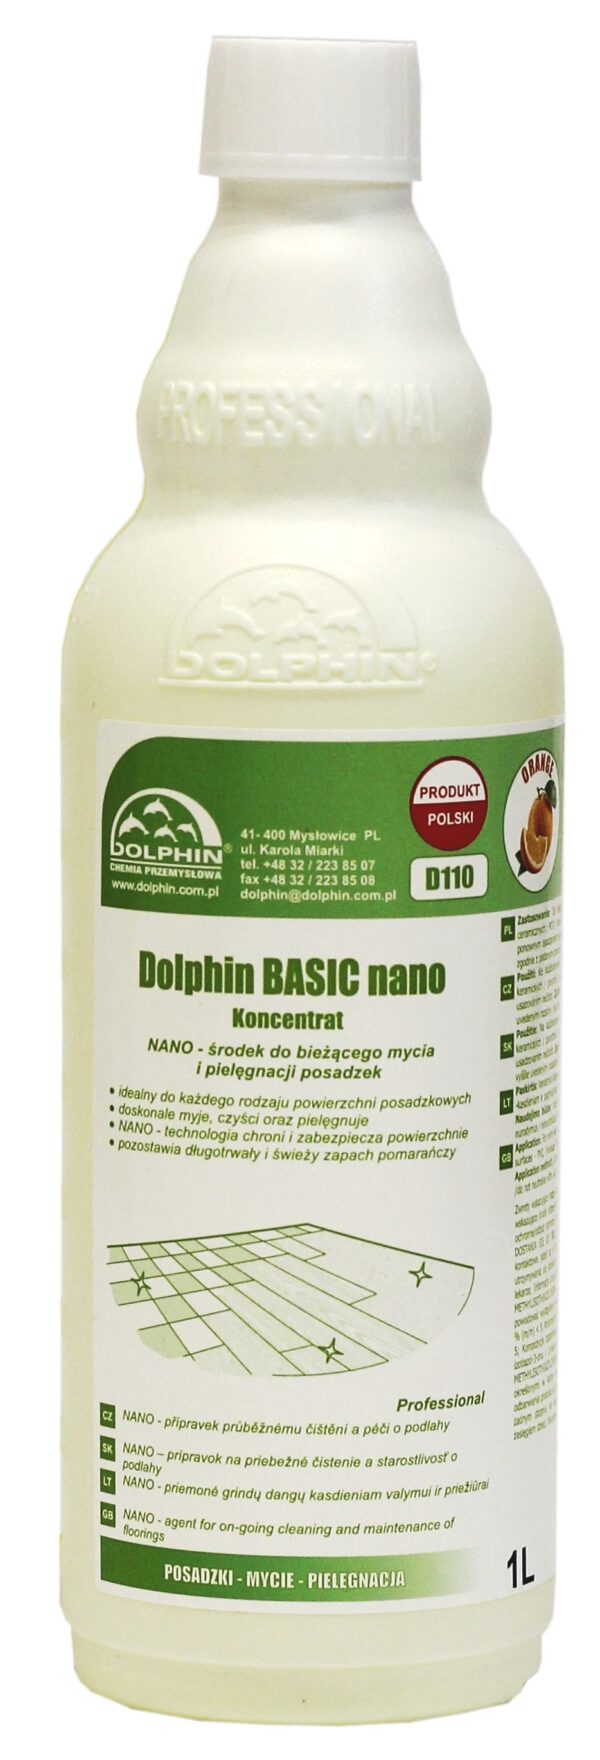 DOLPHIN D110 BASIC nano 1L (12/360)